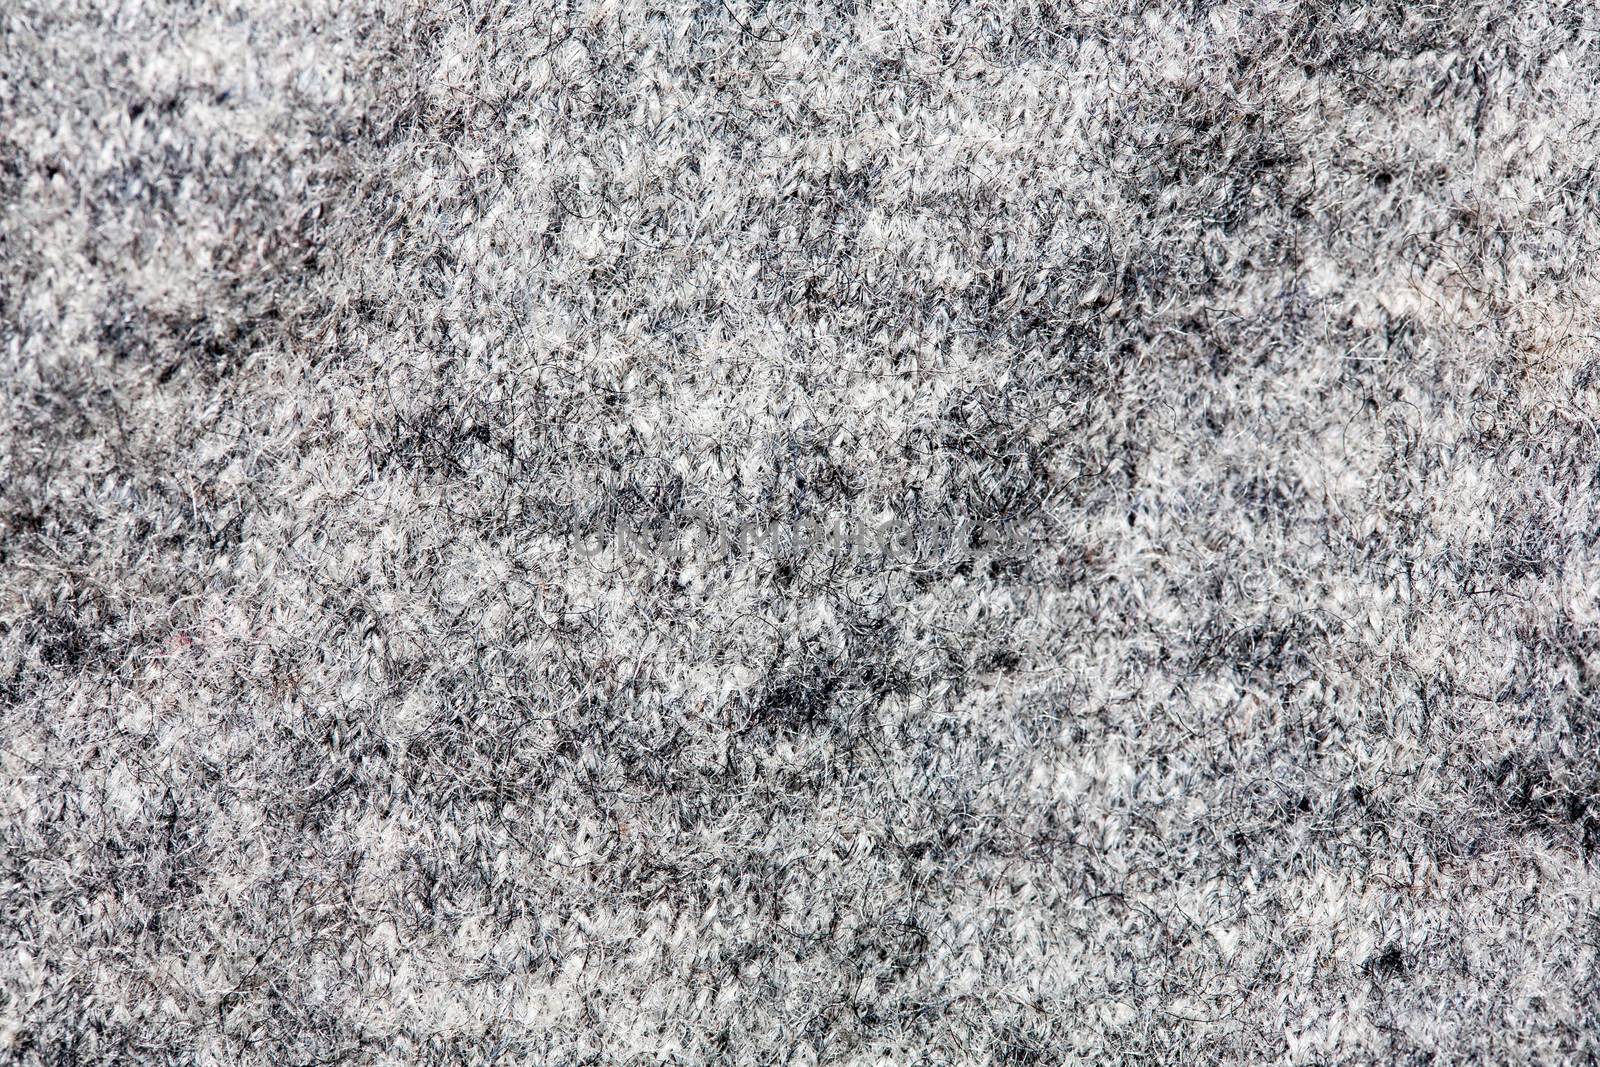 Wool felt fabric background by sfinks